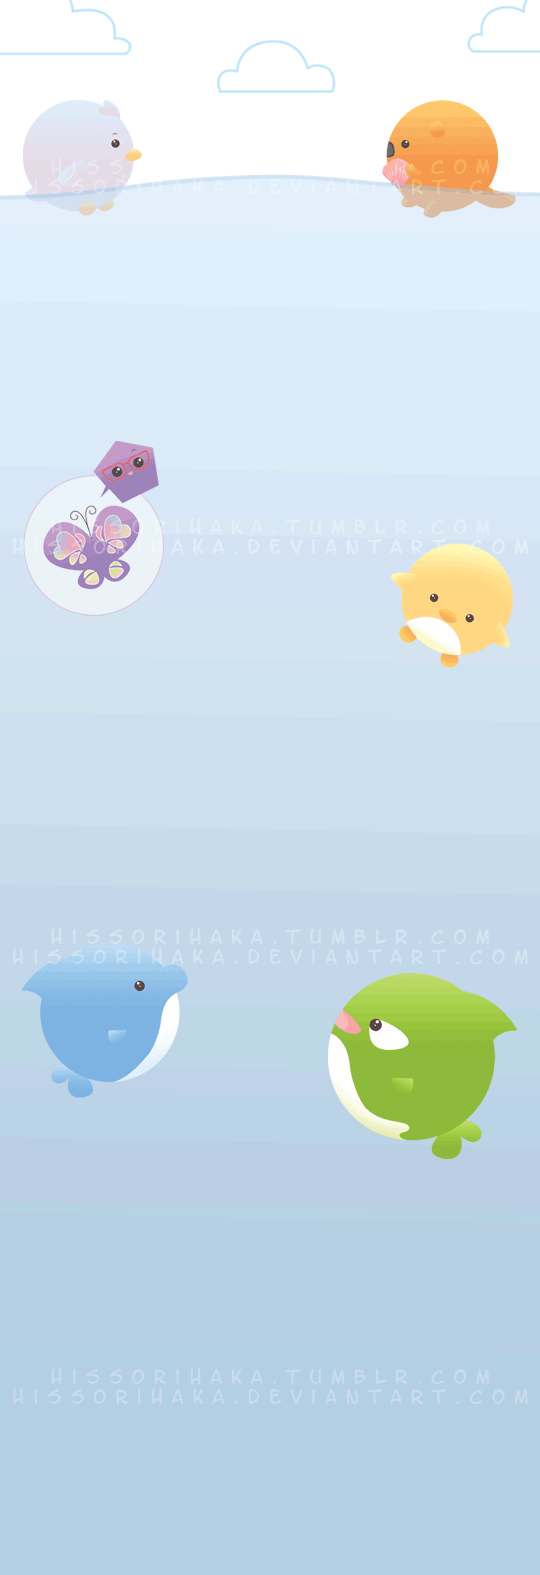 ++Aquarium Cuties++ by hissorihaka